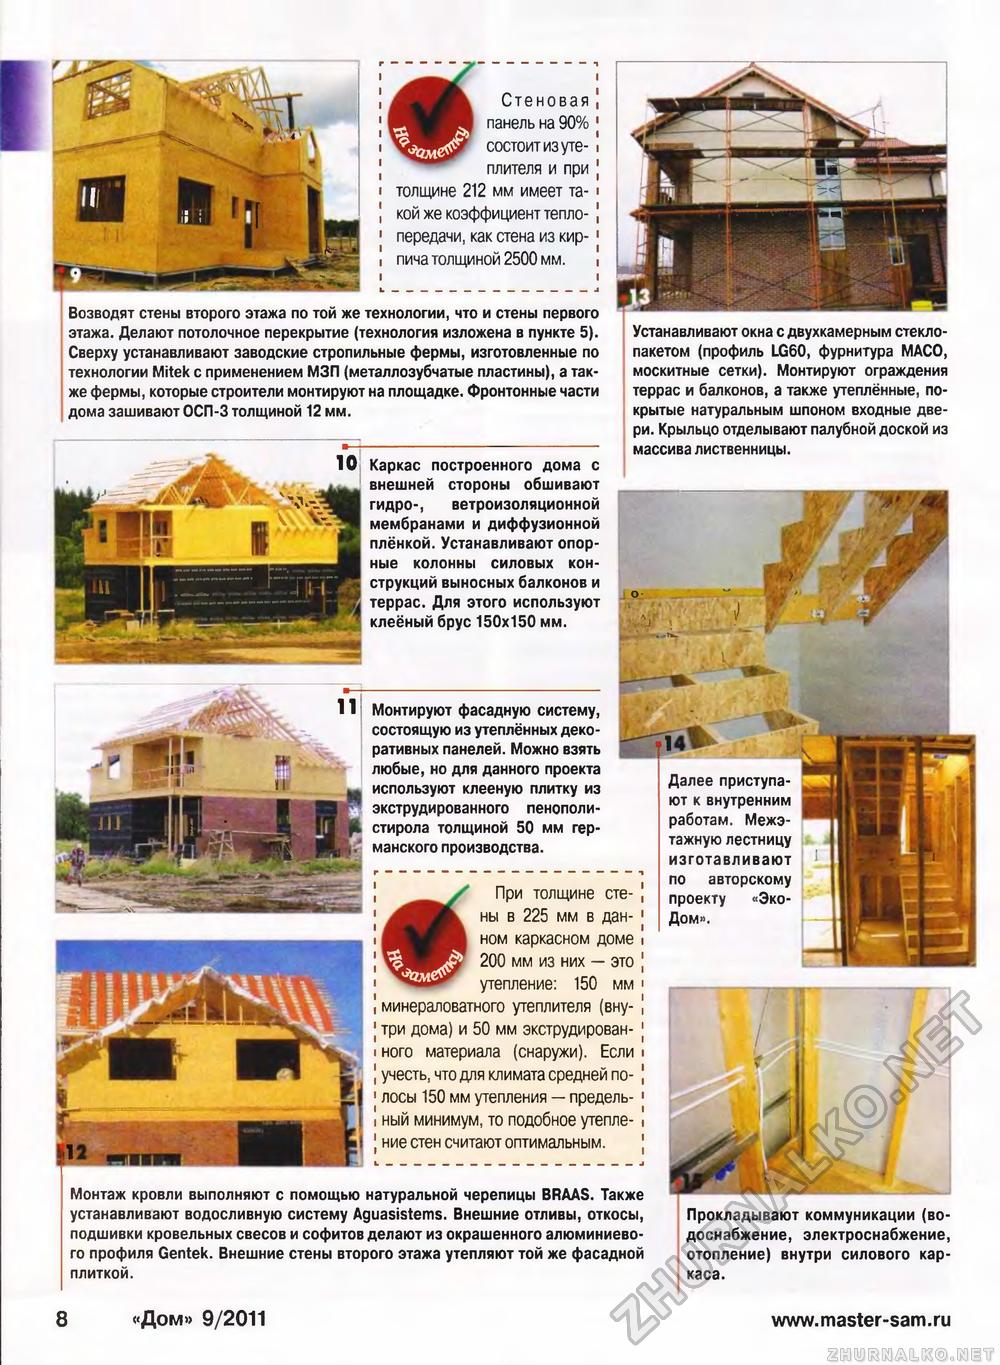 Дом 2011-09, страница 8